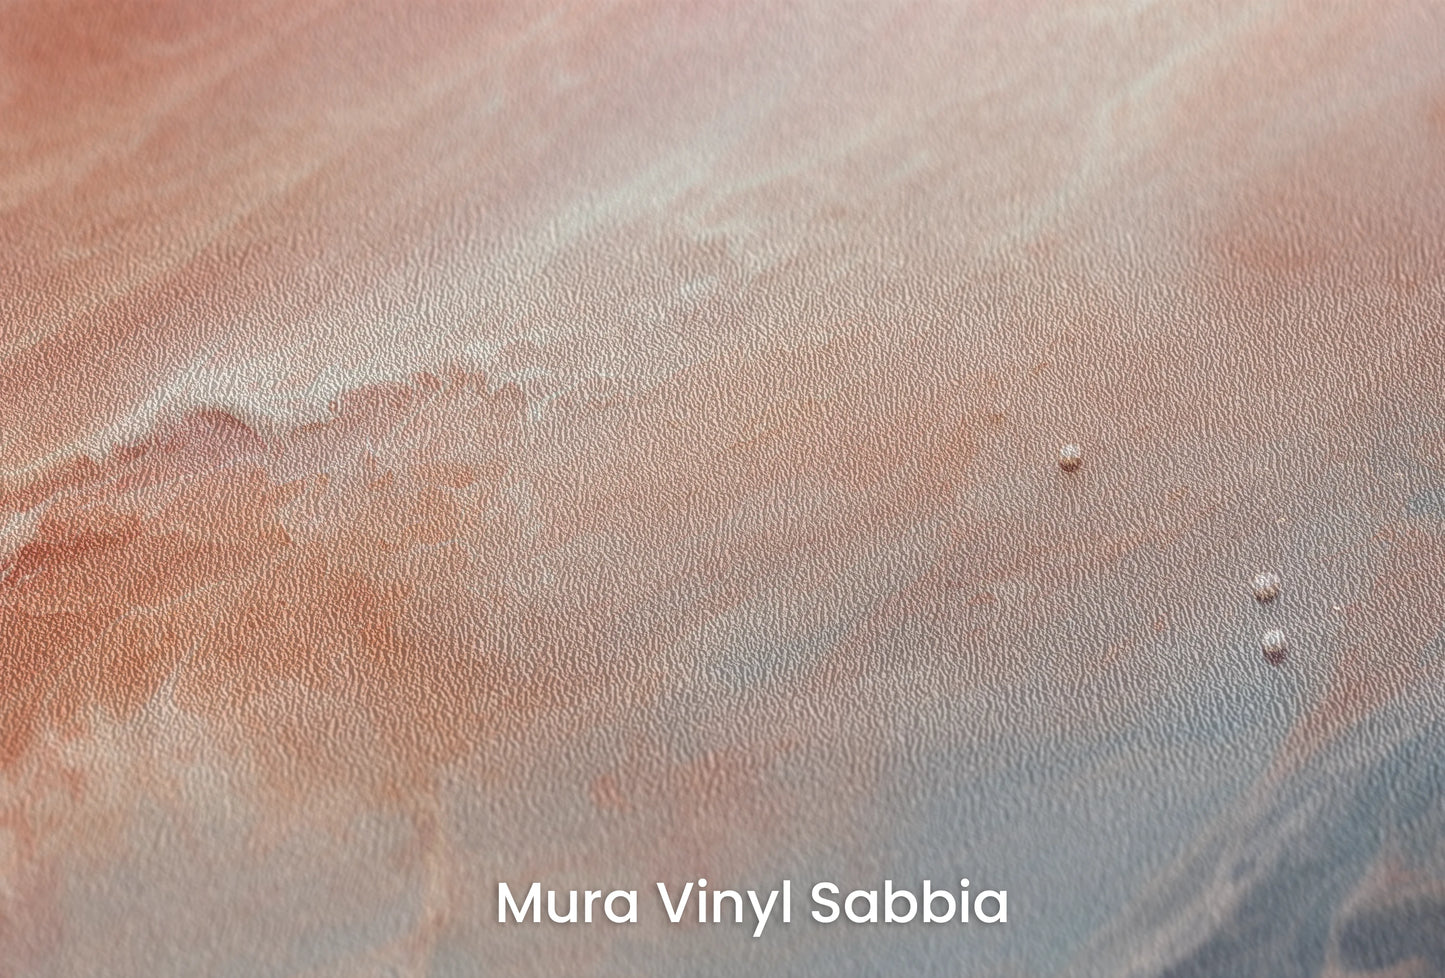 Zbliżenie na artystyczną fototapetę o nazwie Venusian Skies na podłożu Mura Vinyl Sabbia struktura grubego ziarna piasku.